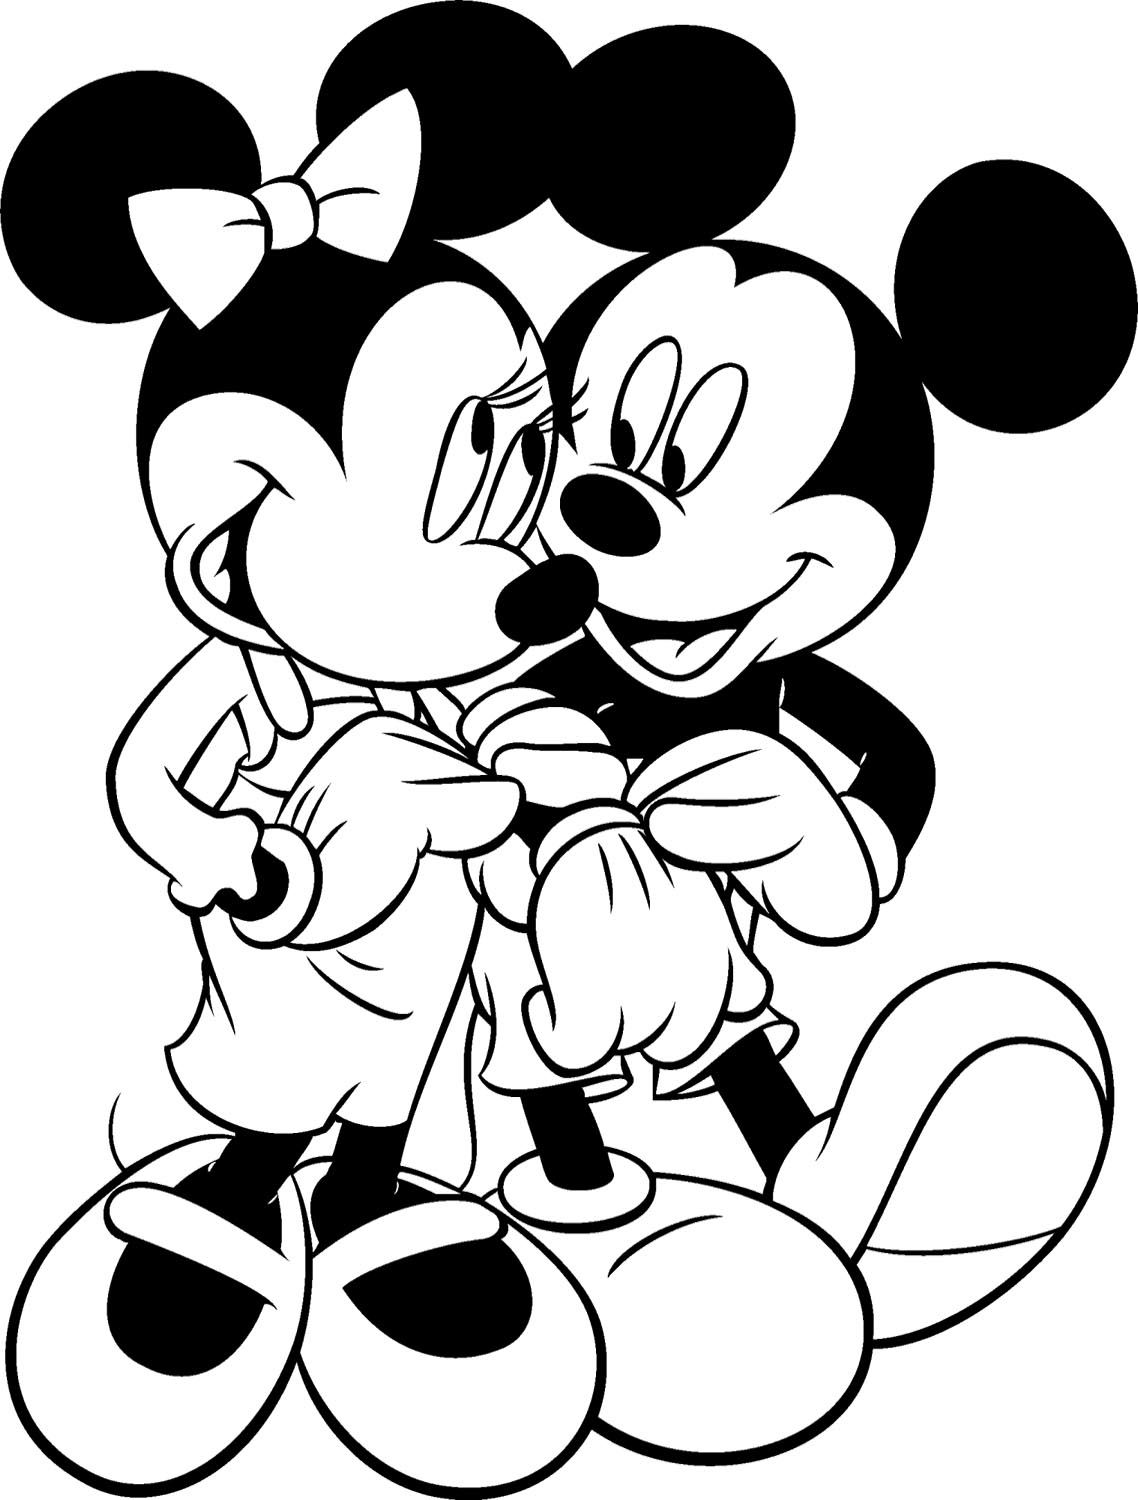 các bức tranh tô màu chuột Mickey cho bé